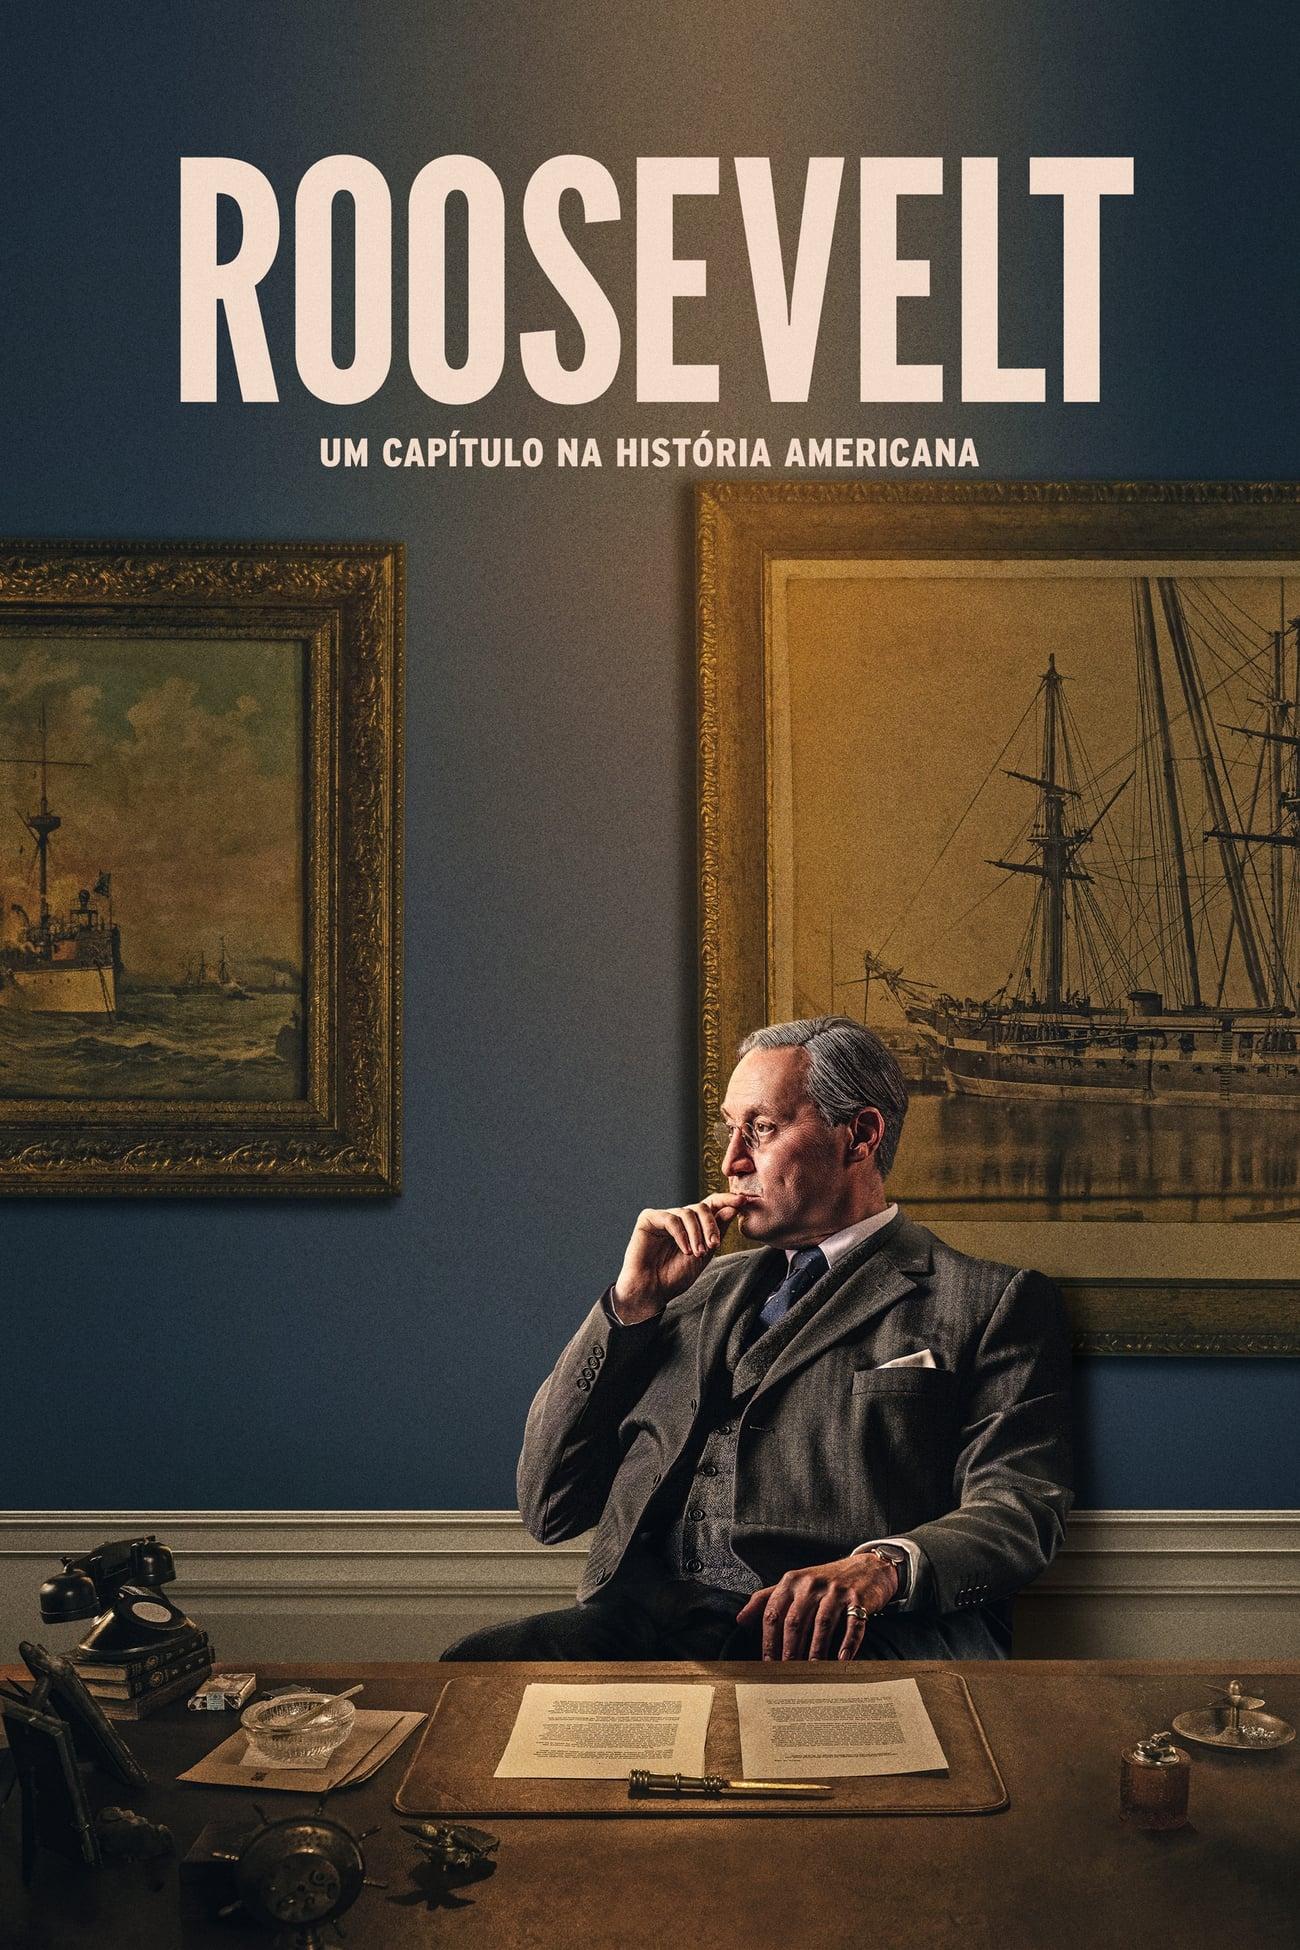 Roosevelt: Um Capítulo na História Americana